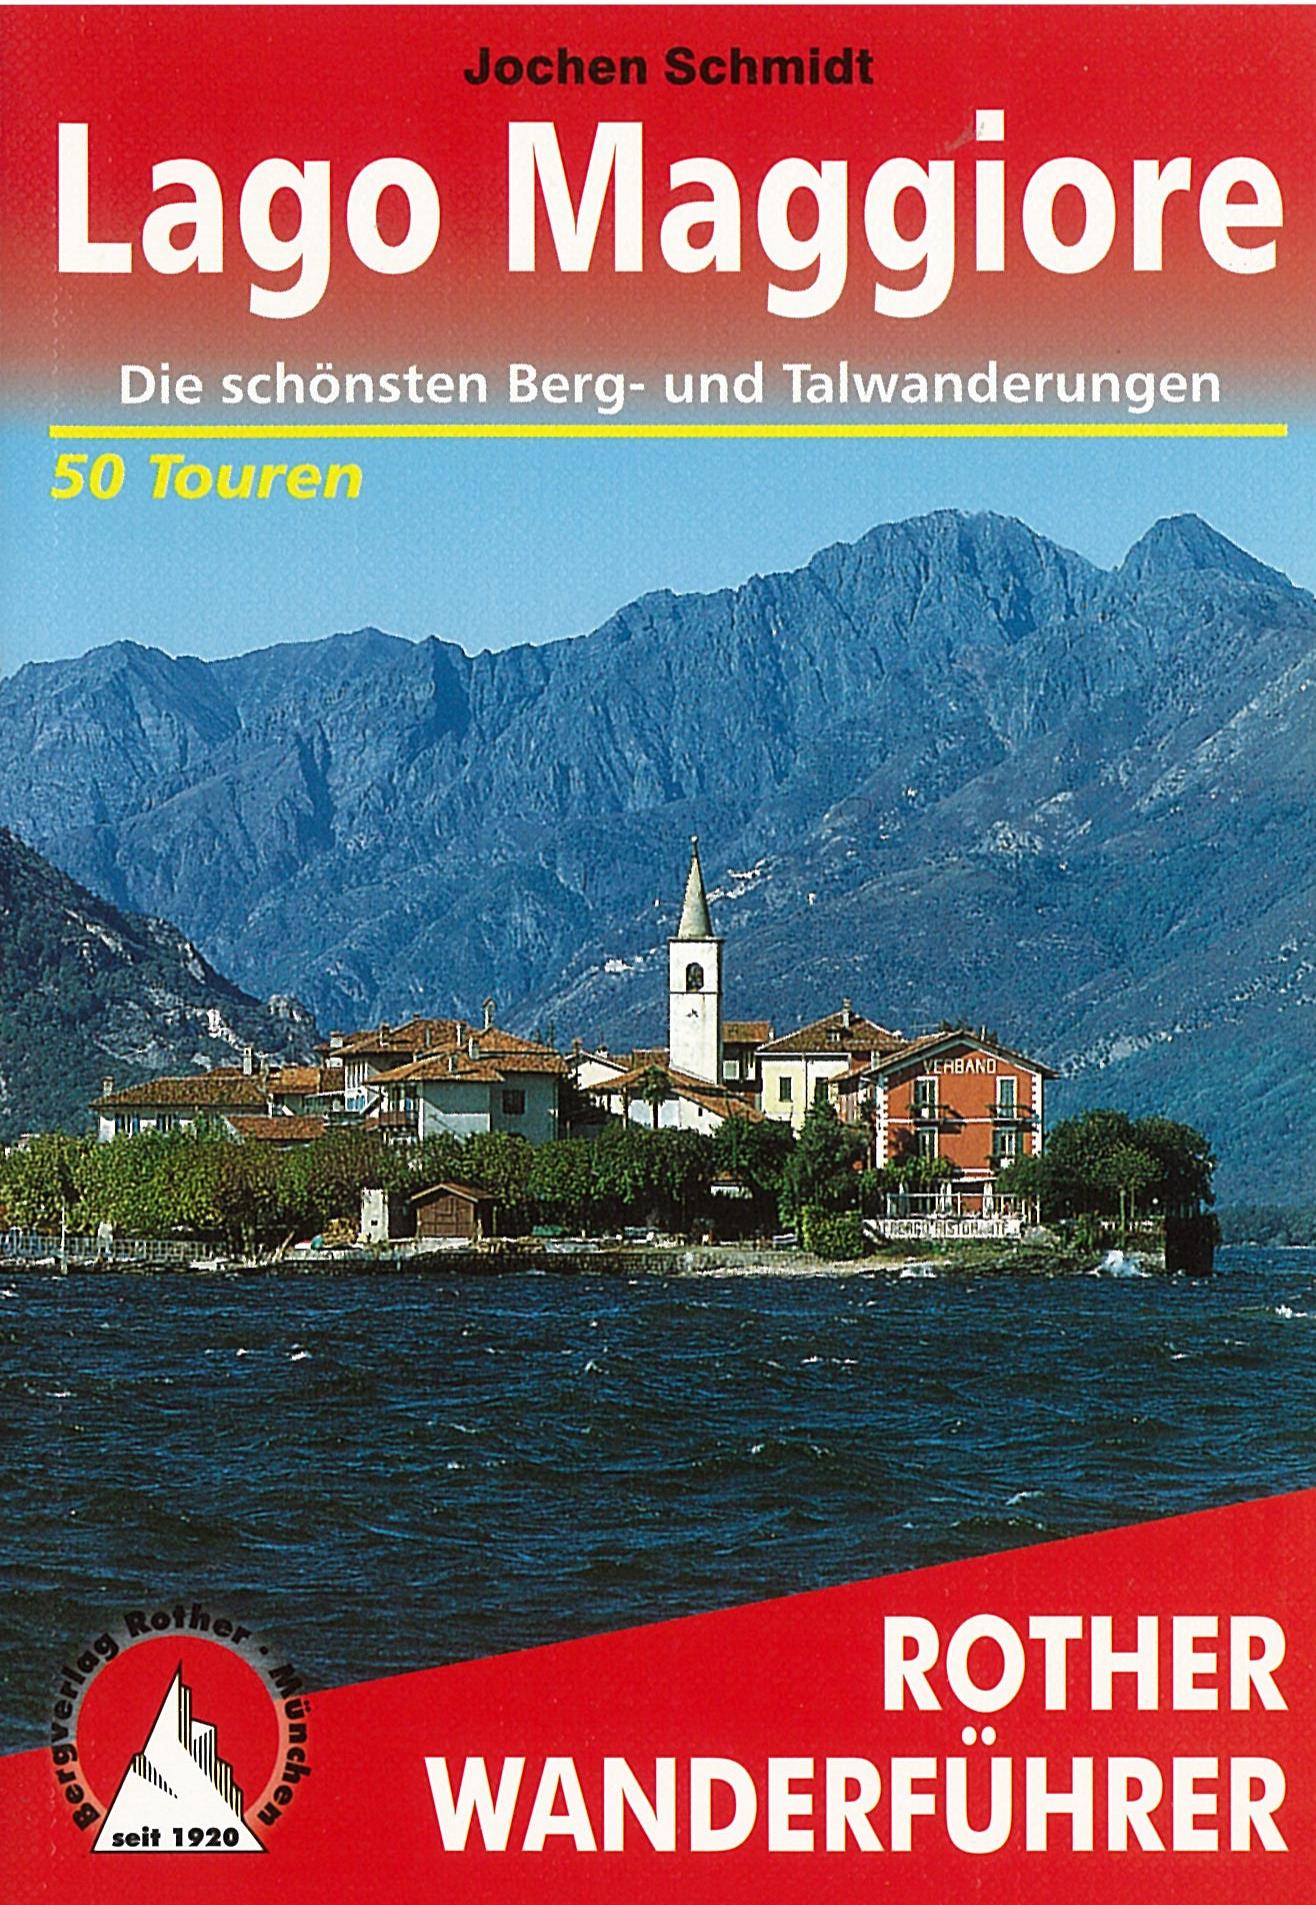 Lago Maggiore Wanderführer Rother / 2017